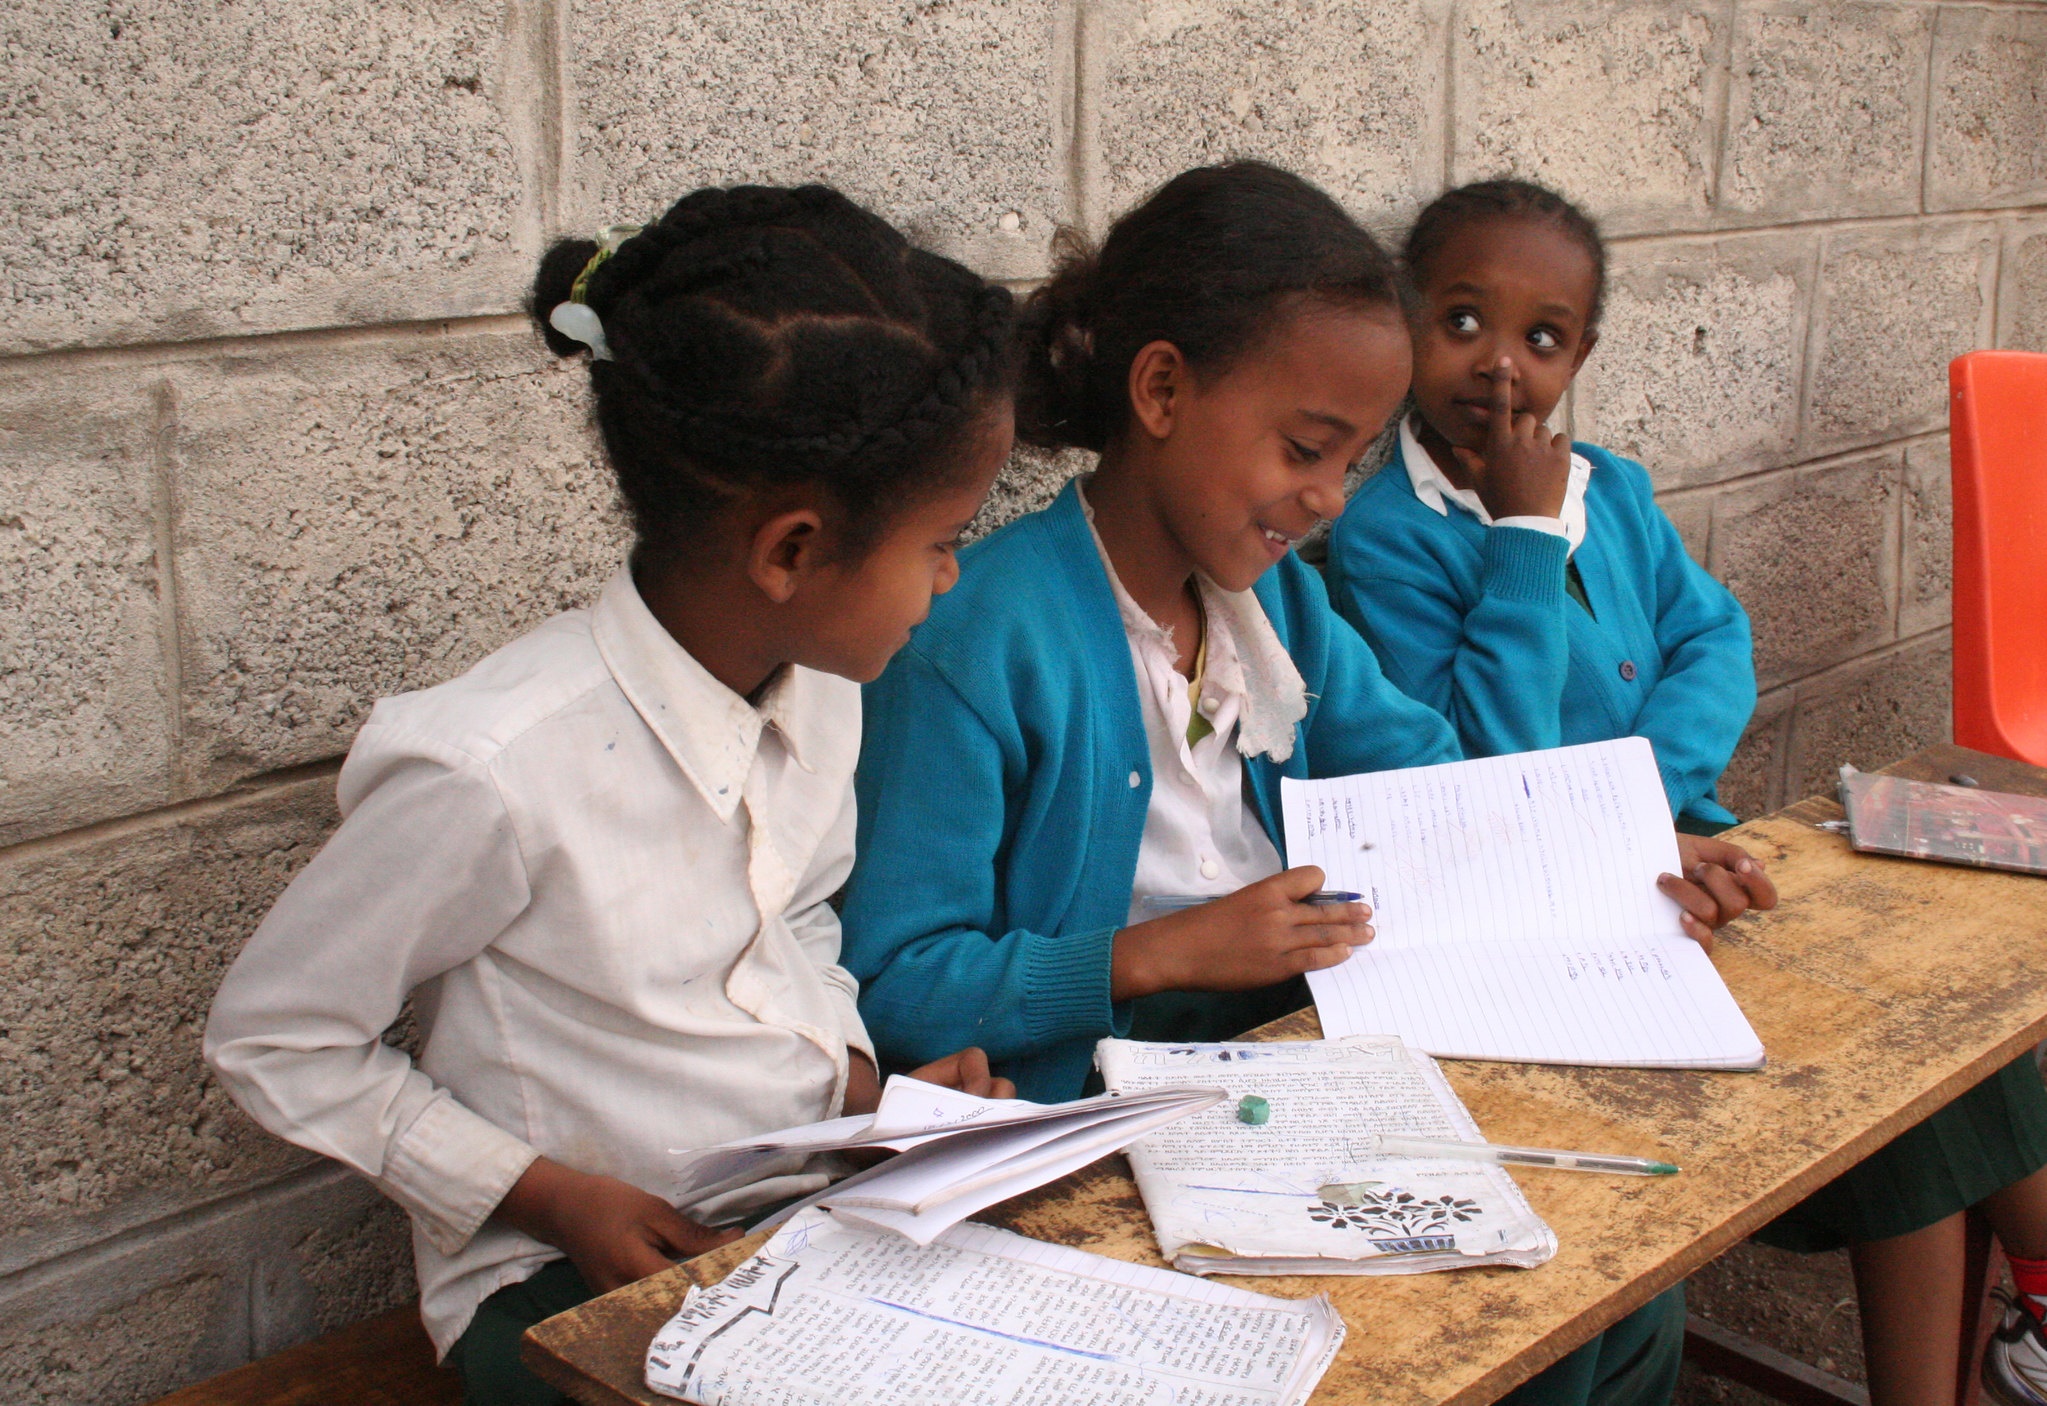  Ethiopian children in school.